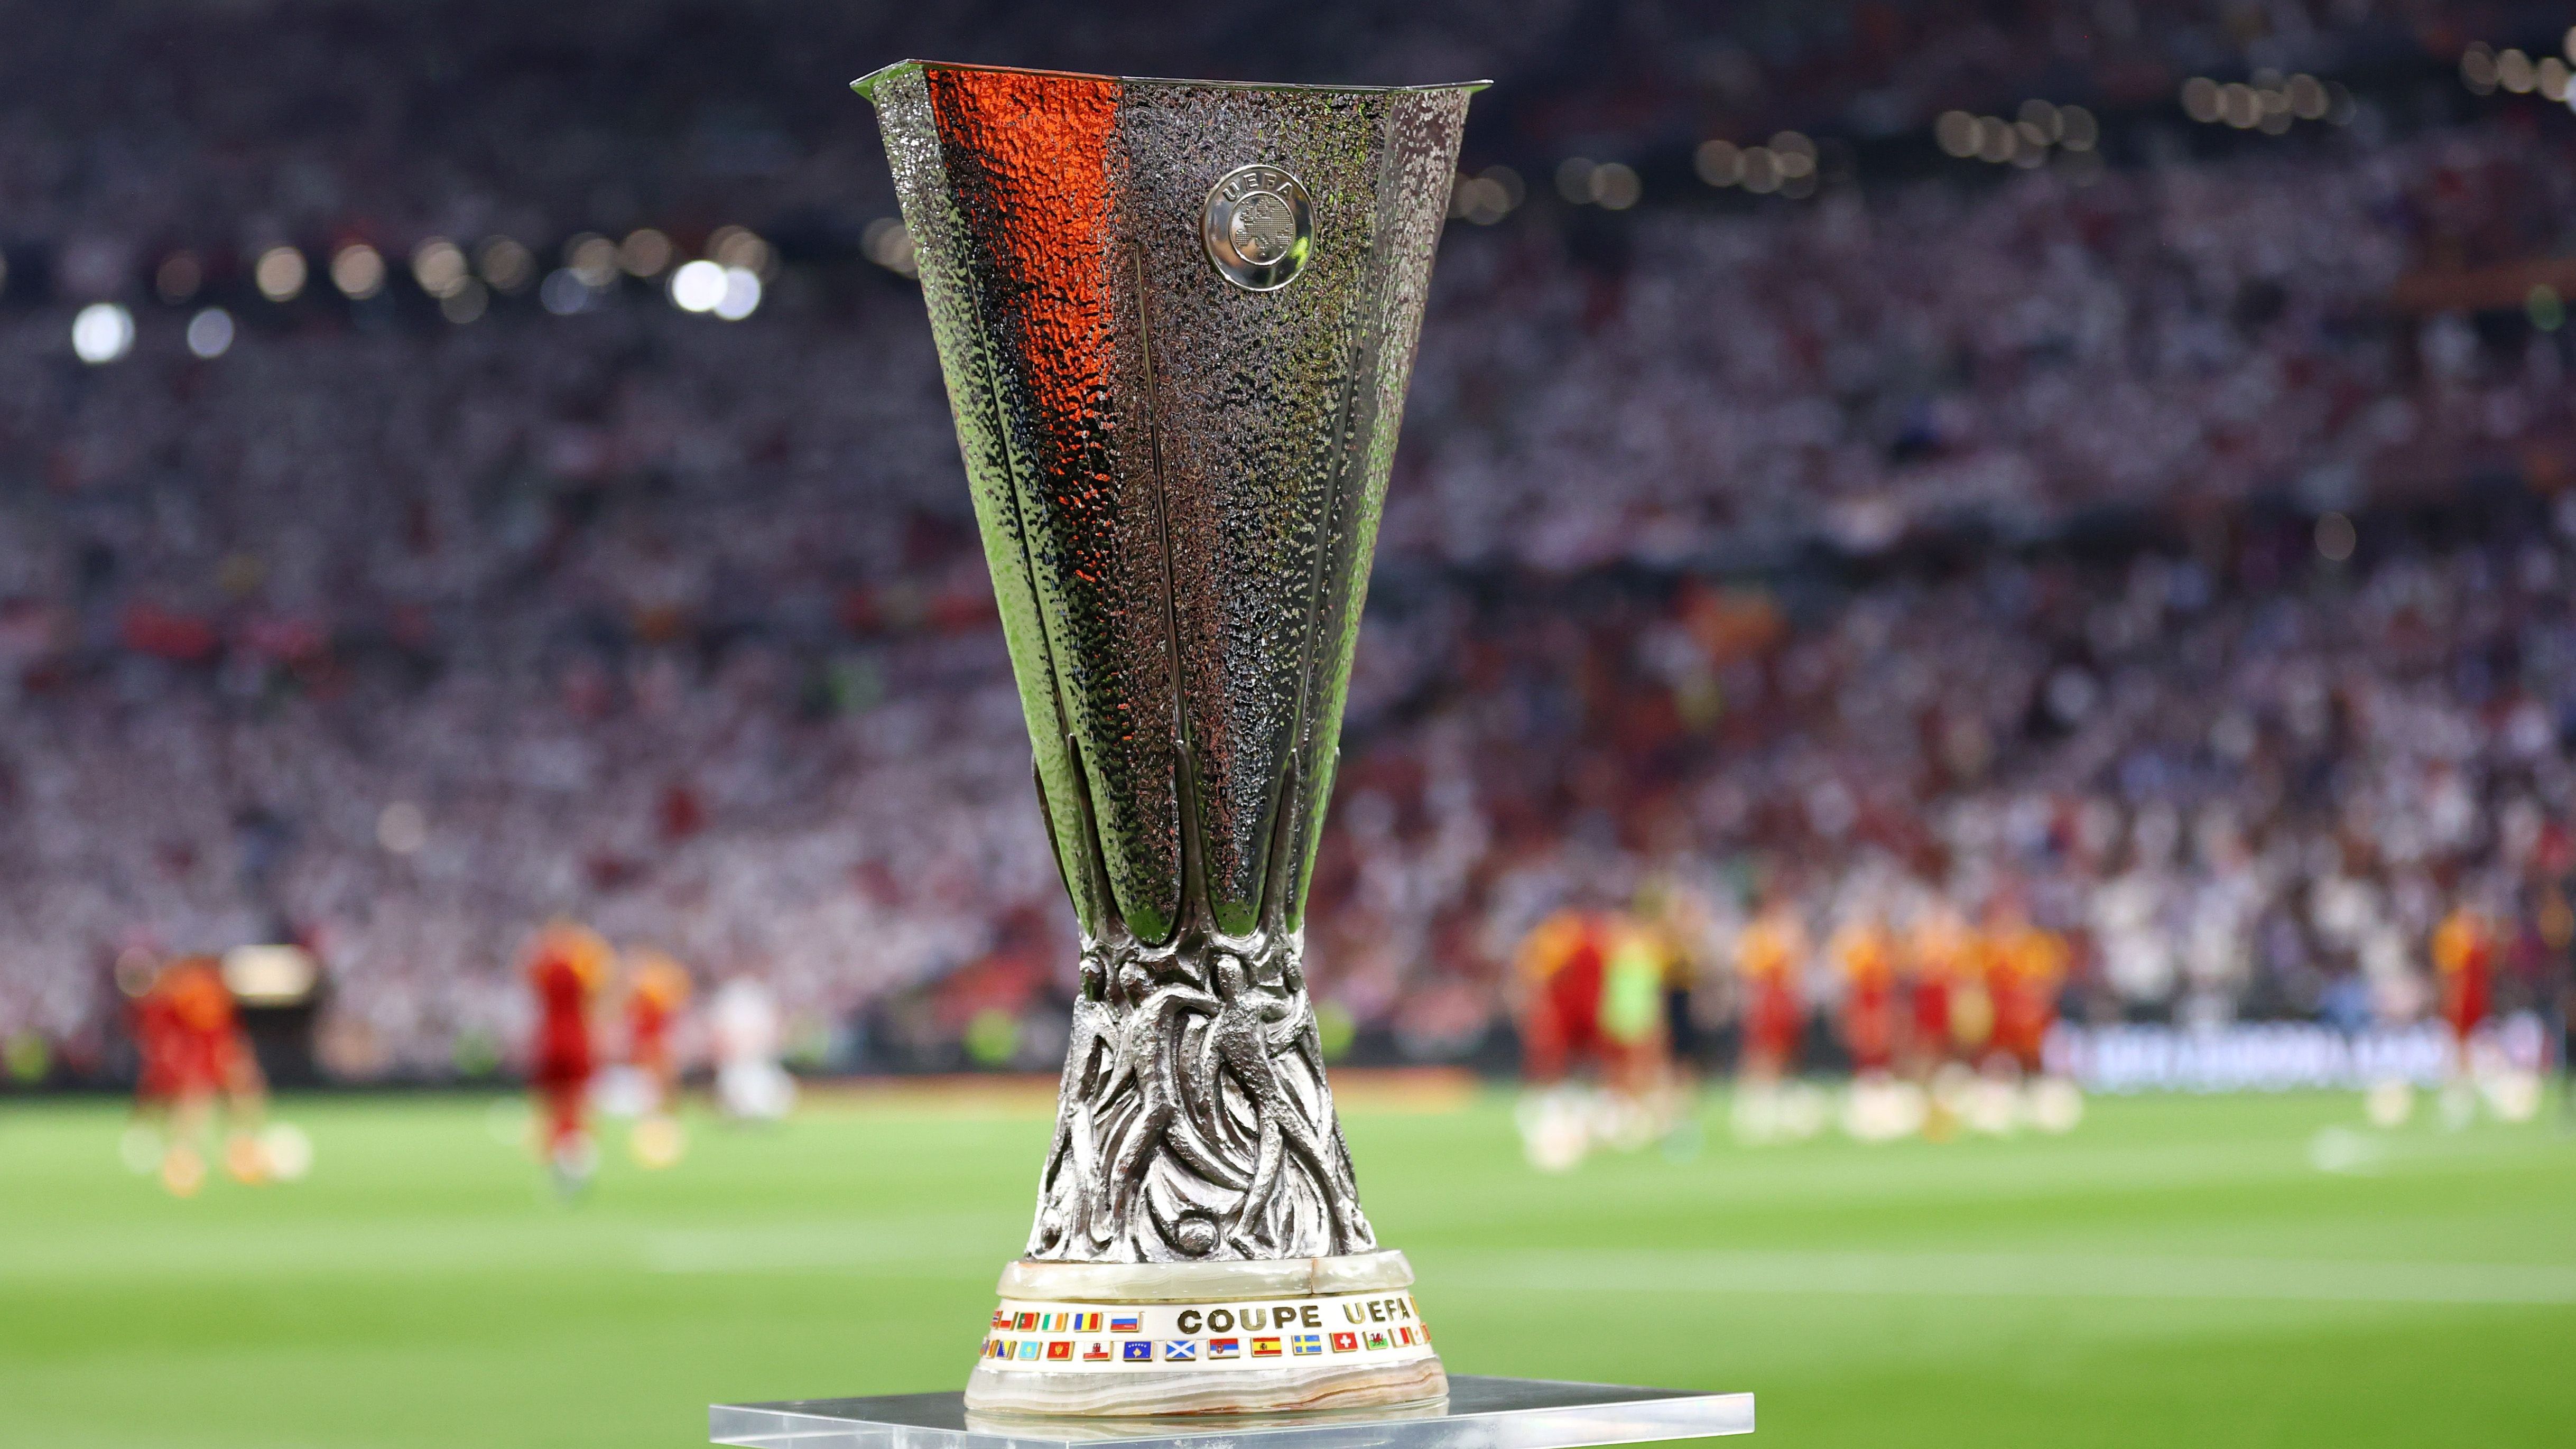 <strong>Modus und Wettbewerb veränderten sich über die Jahre</strong><br>Der UEFA-Pokal wurde aber der Saison 1971/72 ausgetragen. Damals gab es noch wie im Halbfinale ein Hin- und Rückspiel. Seit der Spielzeit 1997/98 wurde der Sieger in einem Spiel auf neutralem Boden ermittelt. 2009/2010 löste die UEFA Europa League den alten Wettbewerb ab.